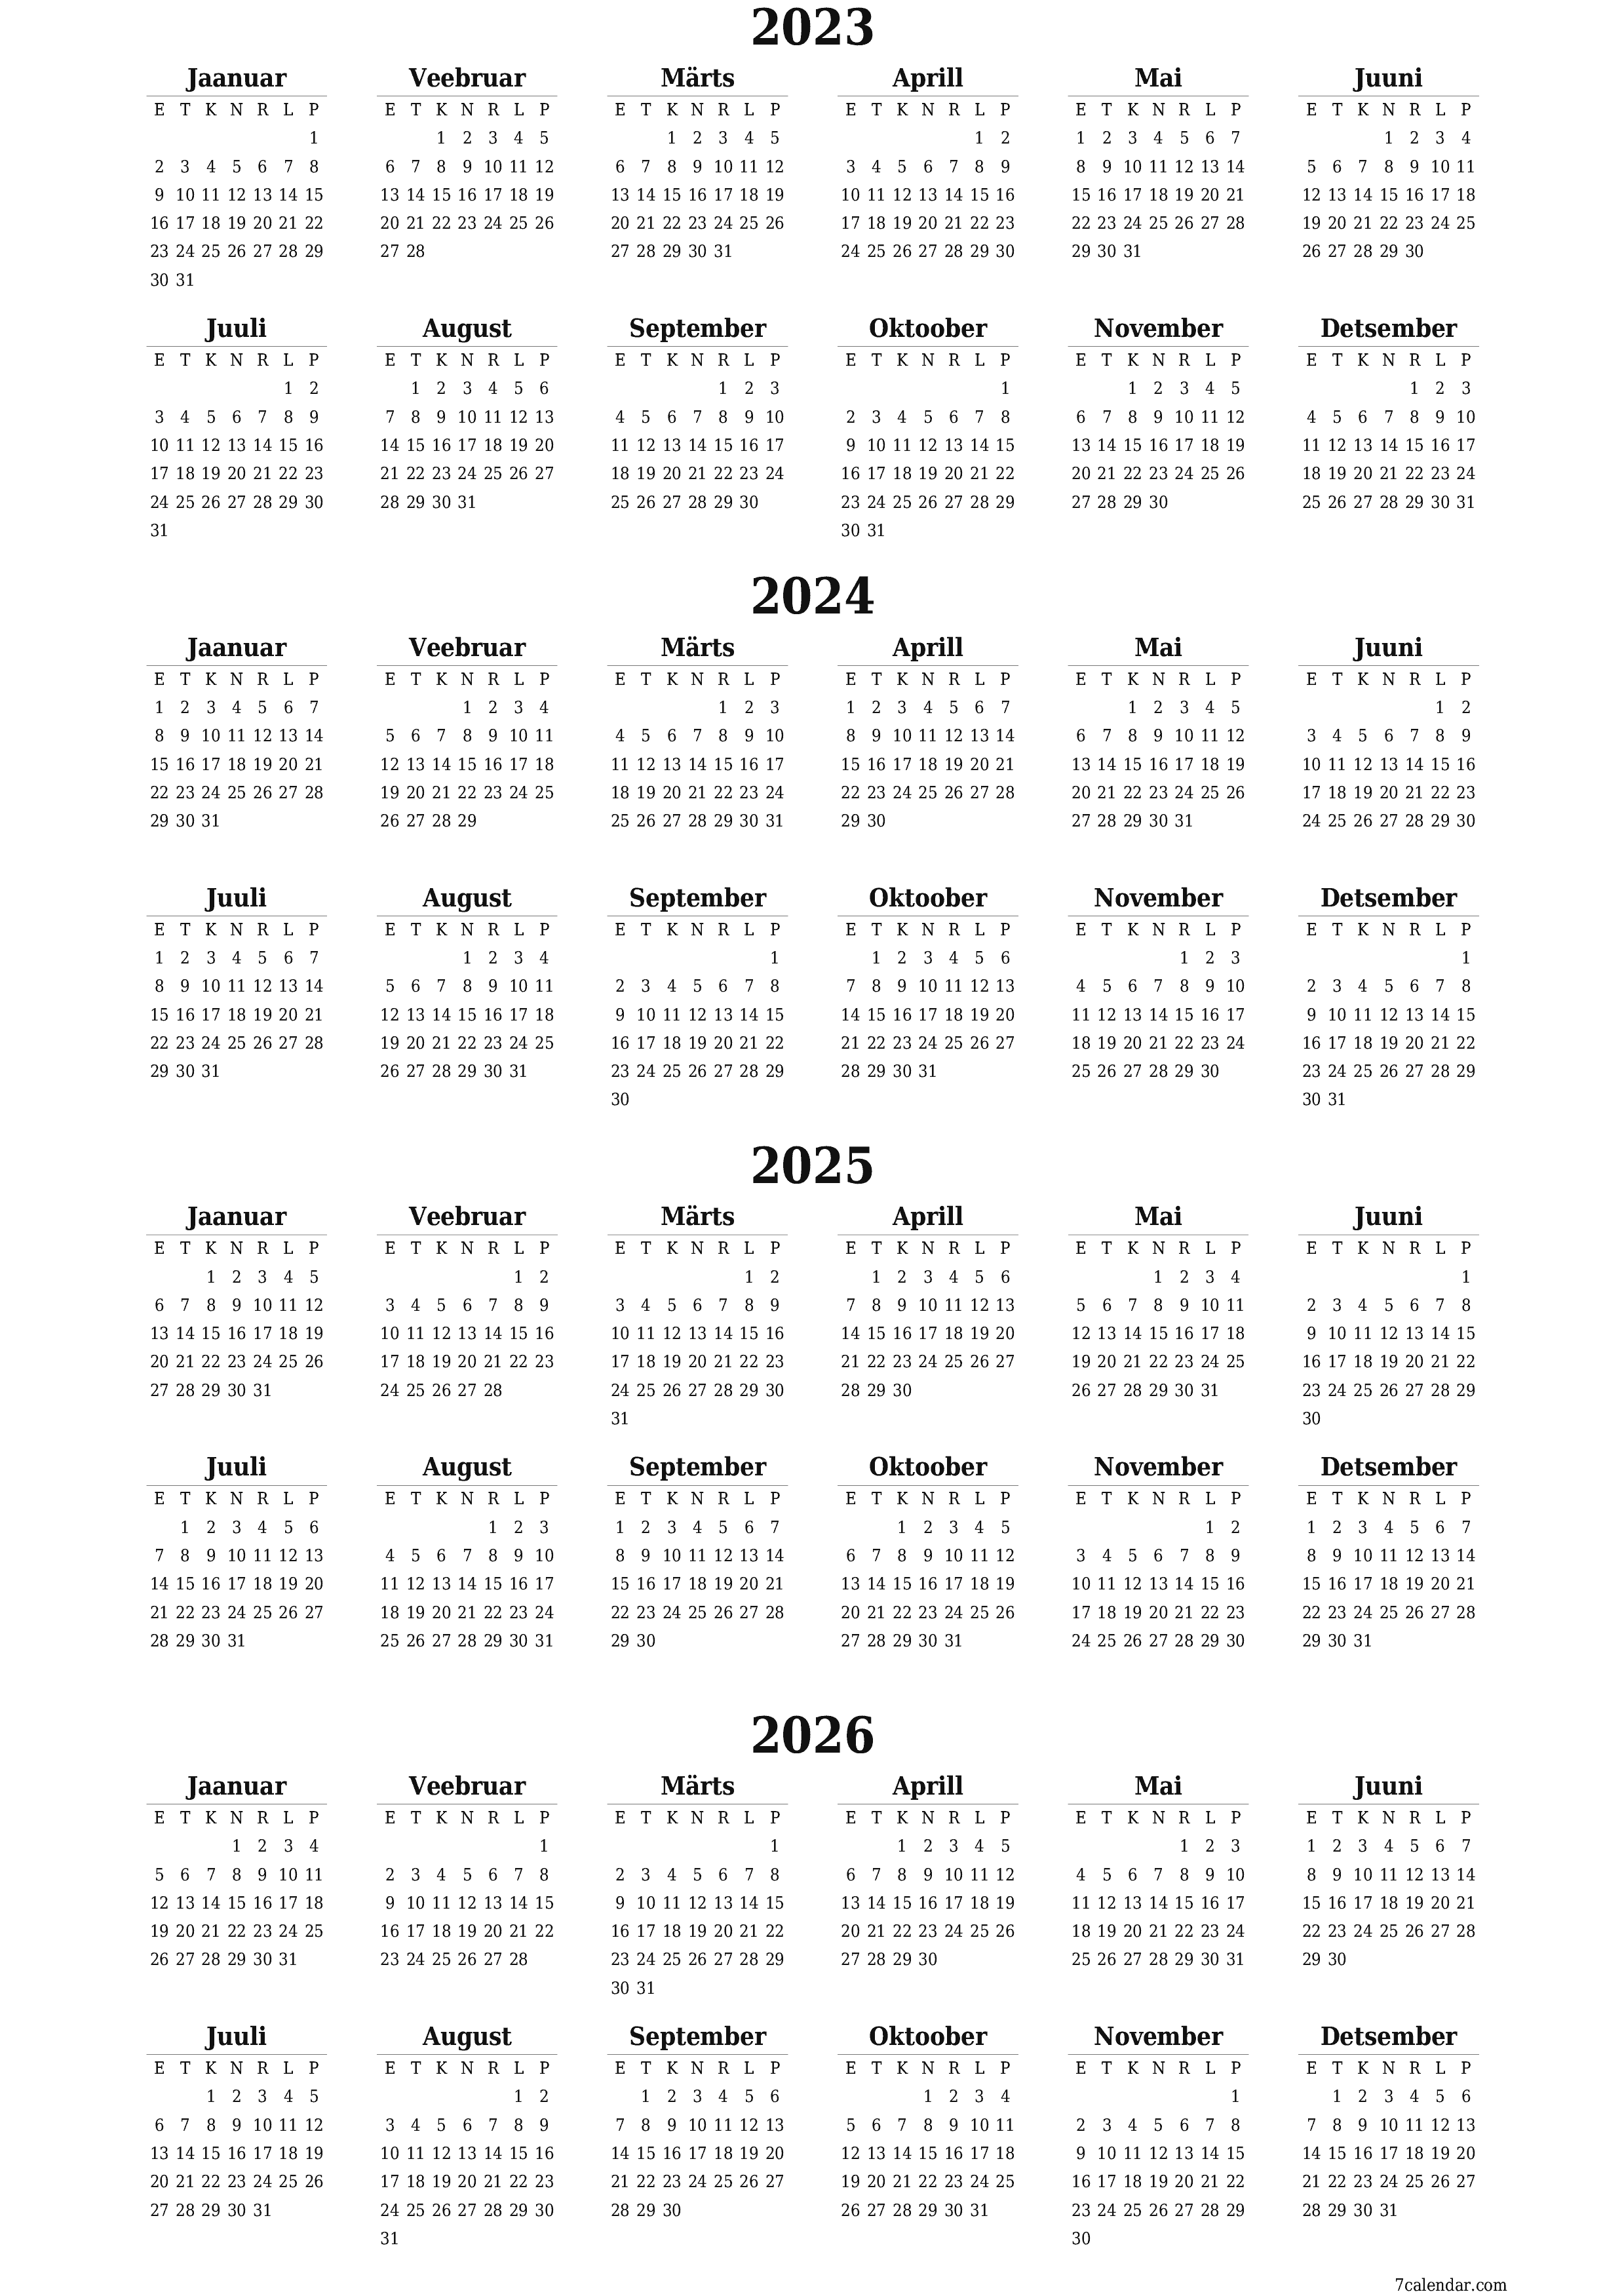 prinditav seina kalendri mall tasuta vertikaalne Iga-aastane kalender Veebruar (Veebr) 2023